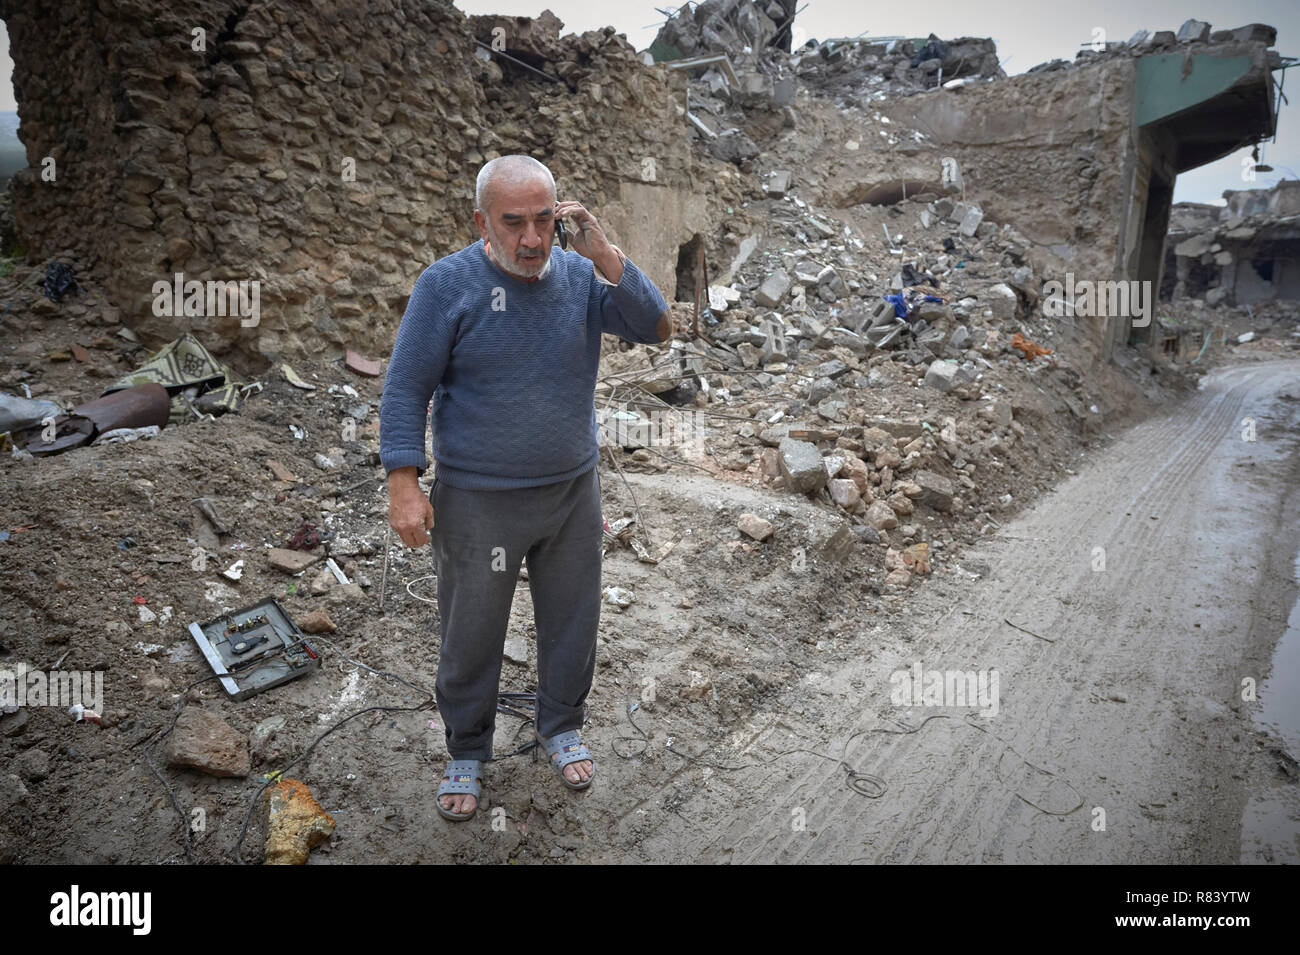 Un homme parle sur son téléphone mobile au milieu des décombres de la vieille ville de Mossoul, en Irak, qui a été dévastée au cours de la bataille de 2017 à Mossoul. Banque D'Images